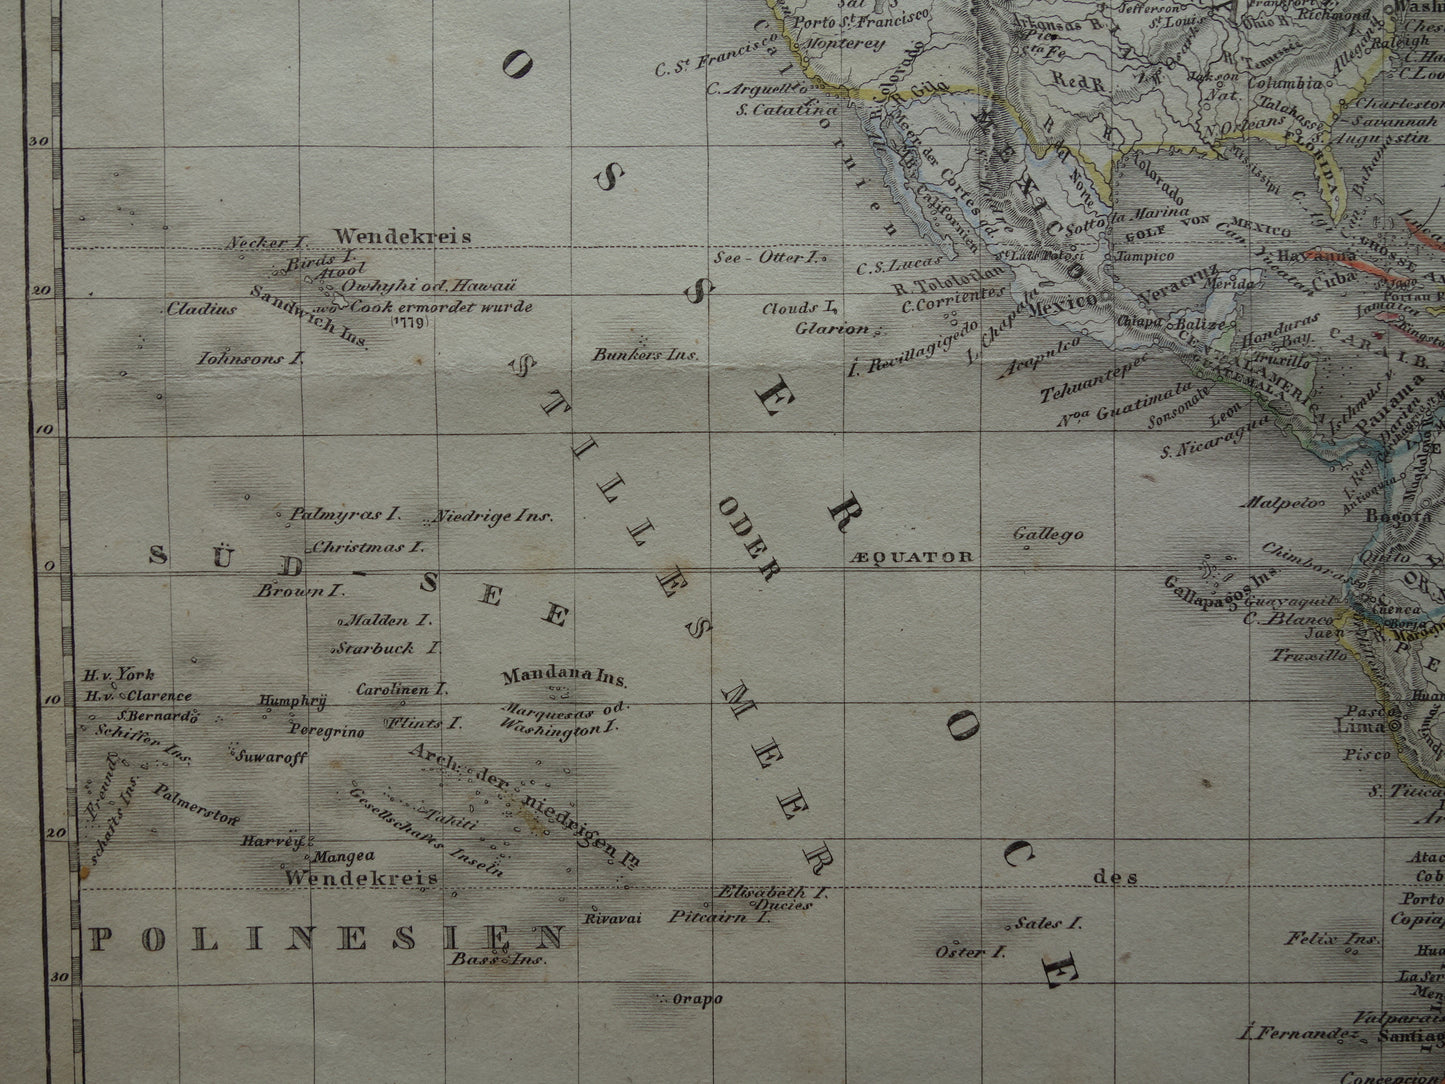 AMERIKA oude kaart van Noord- en Zuid-Amerika in 1849 originele antieke Duitse landkaart Noordpool Groenland Canada vintage print continent